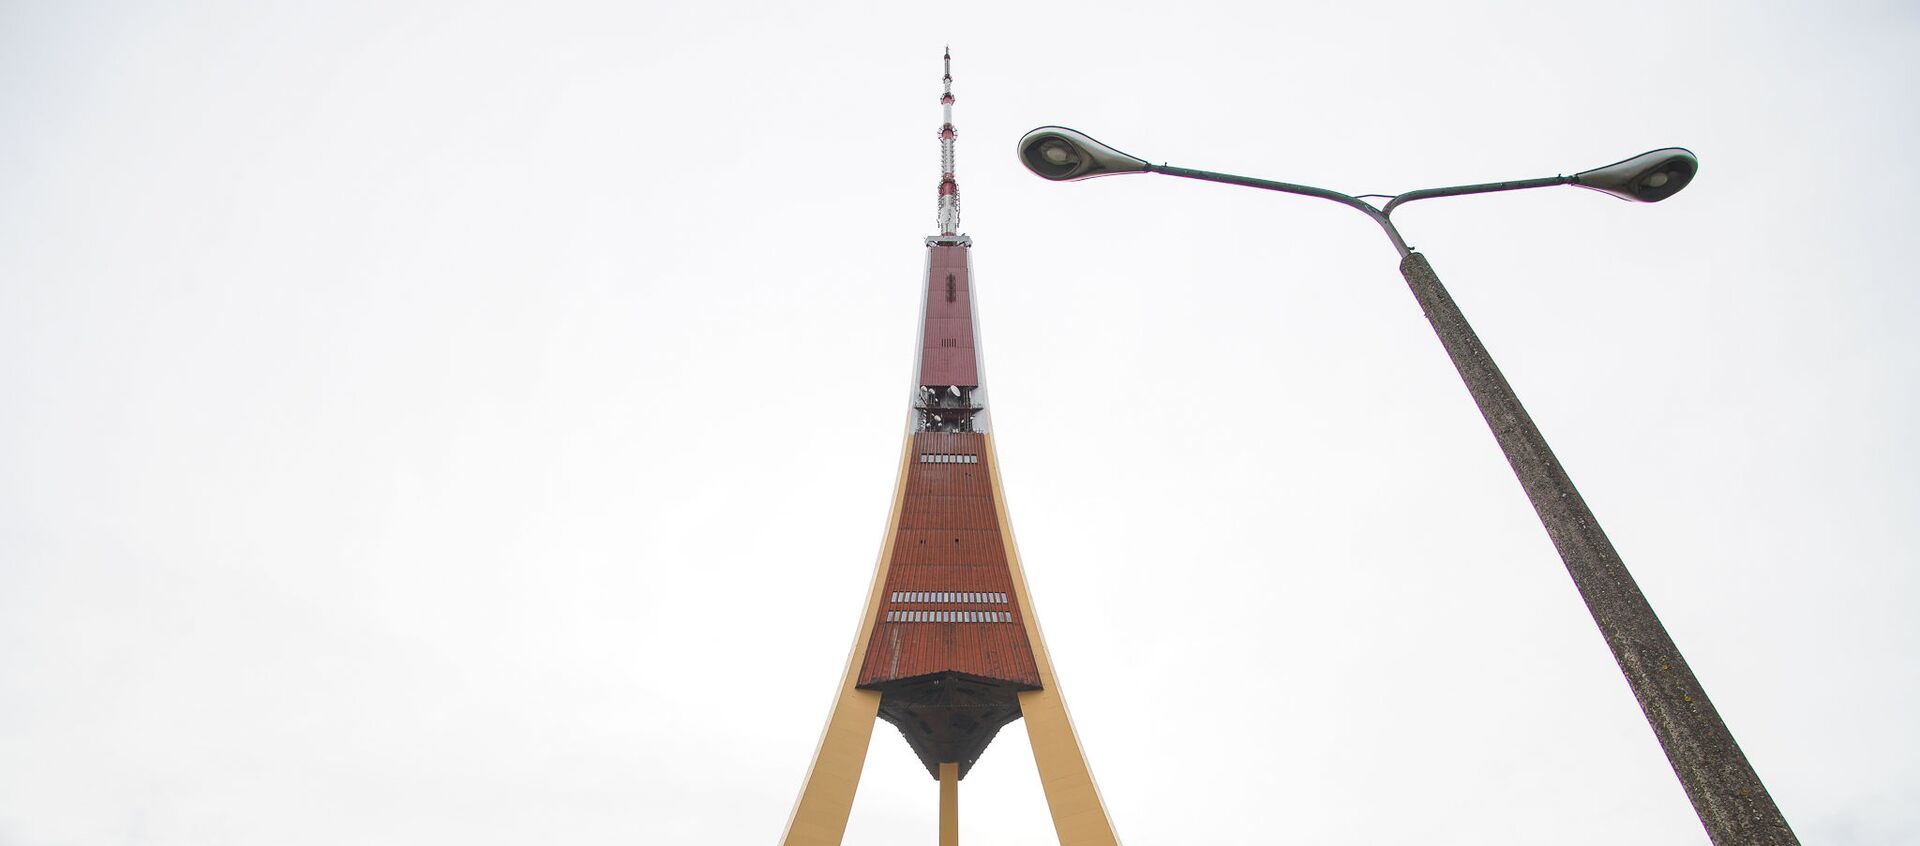 Телебашня на Закюсале - Sputnik Латвия, 1920, 09.09.2019